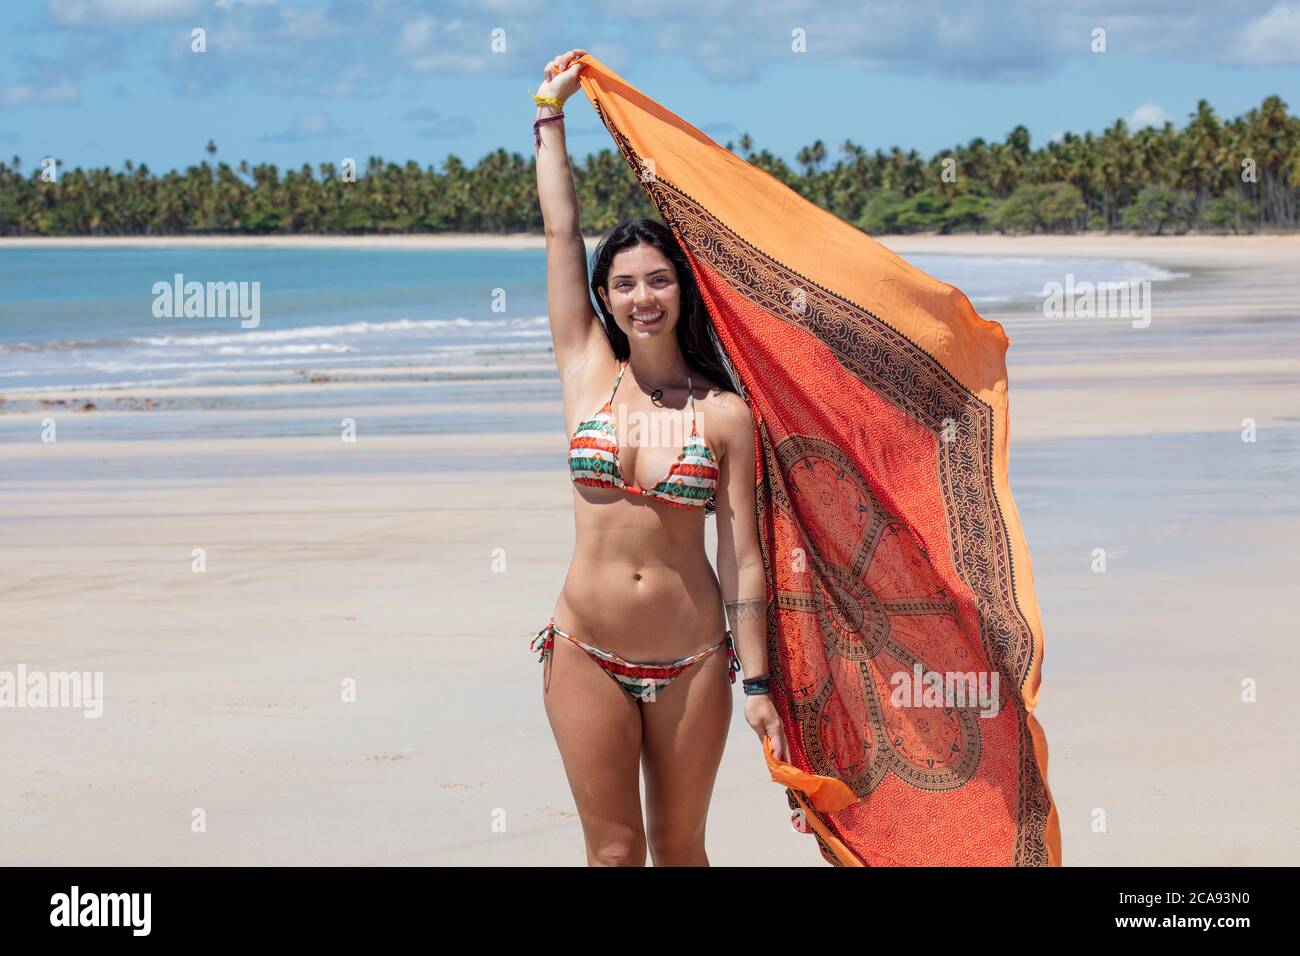 Una hermosa mujer hispana (latinoamericana) en sus veinte años sonriendo, sosteniendo un colorido chal y de pie en una playa desierta, Brasil, Sudamérica Foto de stock